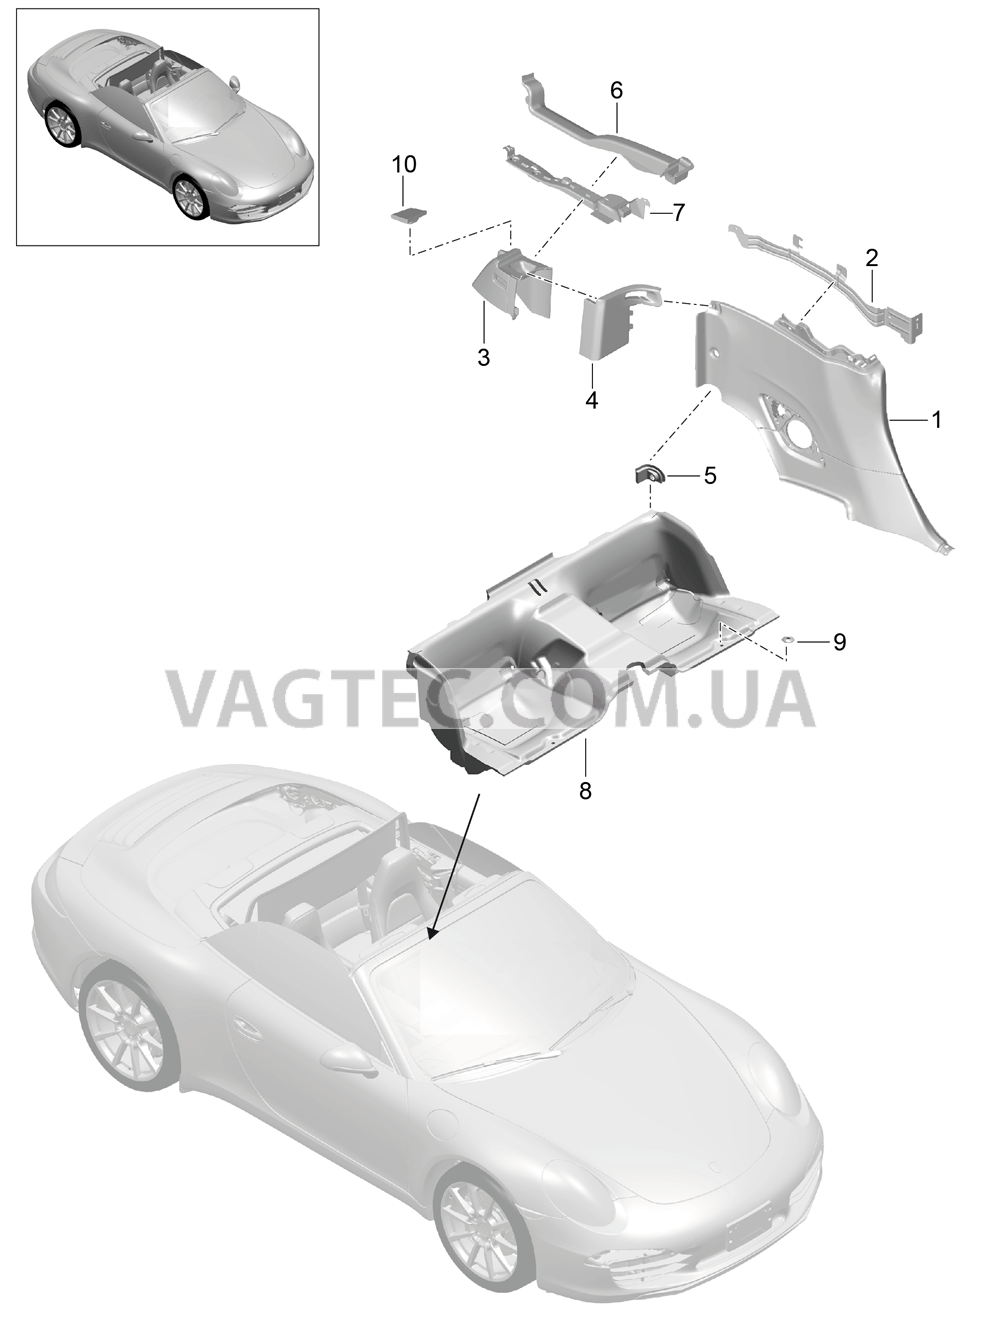 807-032 Обшивка бок.стенки, Задняя внутренняя стенка, Углубление для сиденья
						
						TARGA для PORSCHE 911.Carrera 2012-2016USA